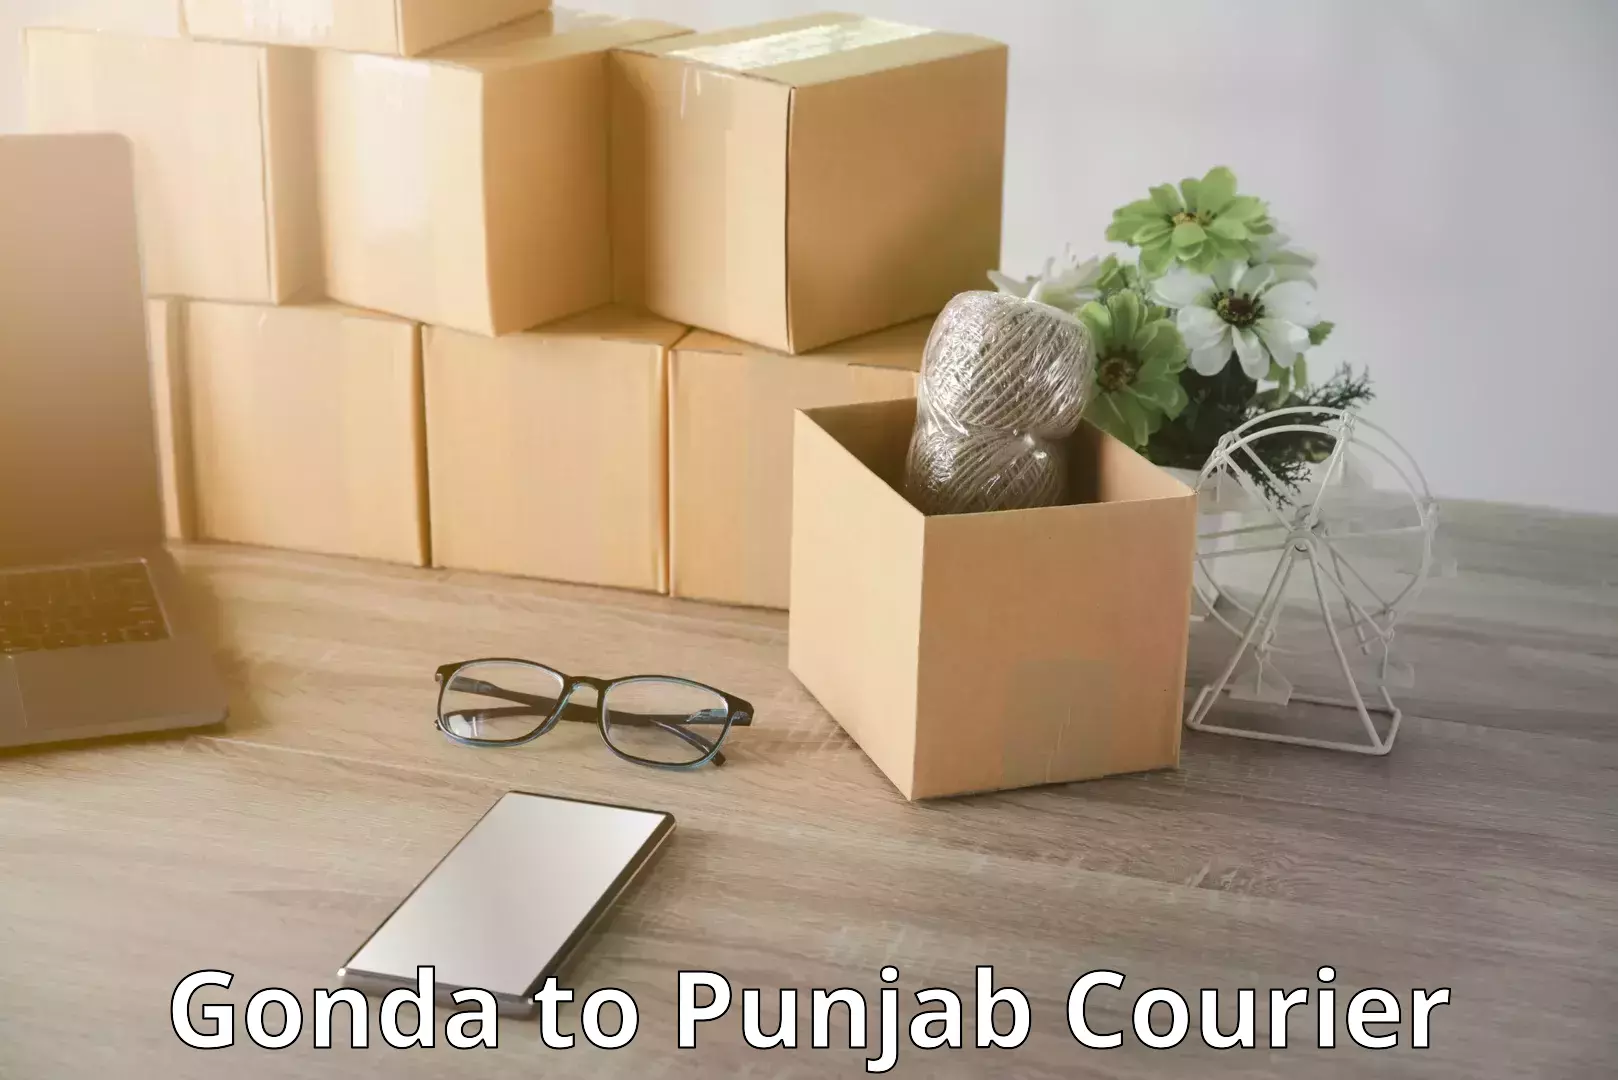 Luggage delivery optimization Gonda to Punjab